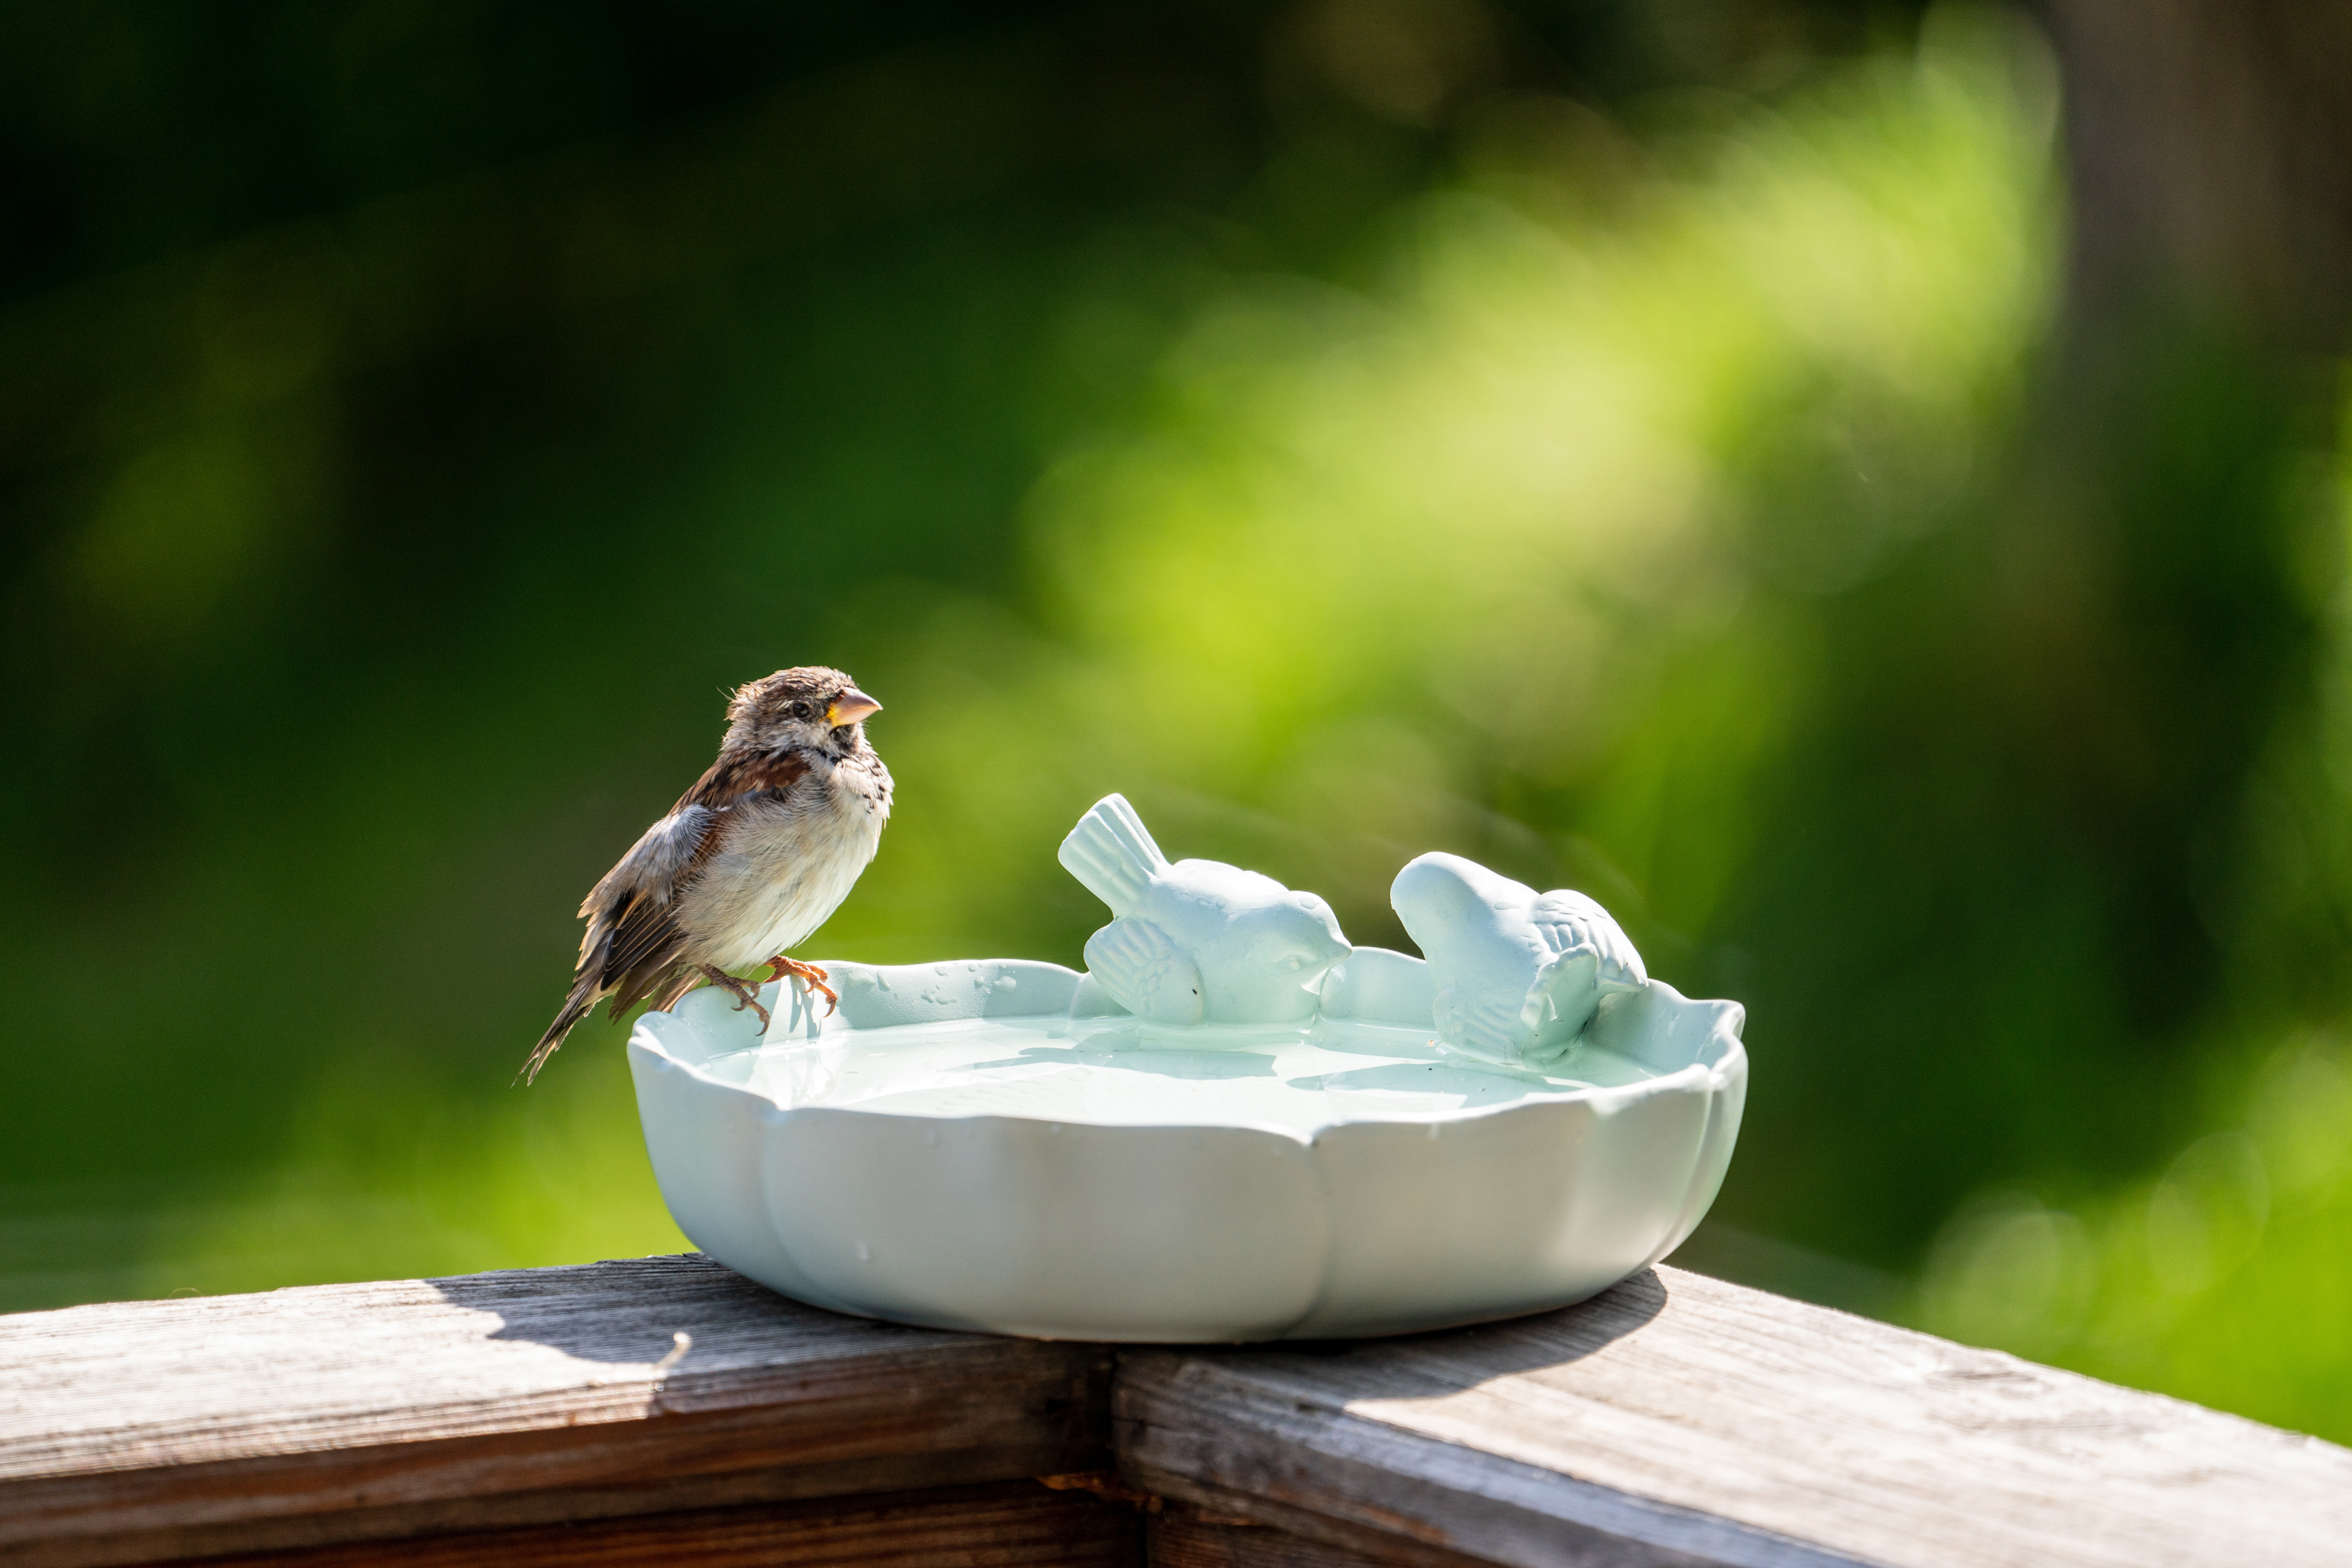 Mangeoire à oiseaux pour rebord de fenêtre  La meilleure façon d'attirer  plus d'oiseaux